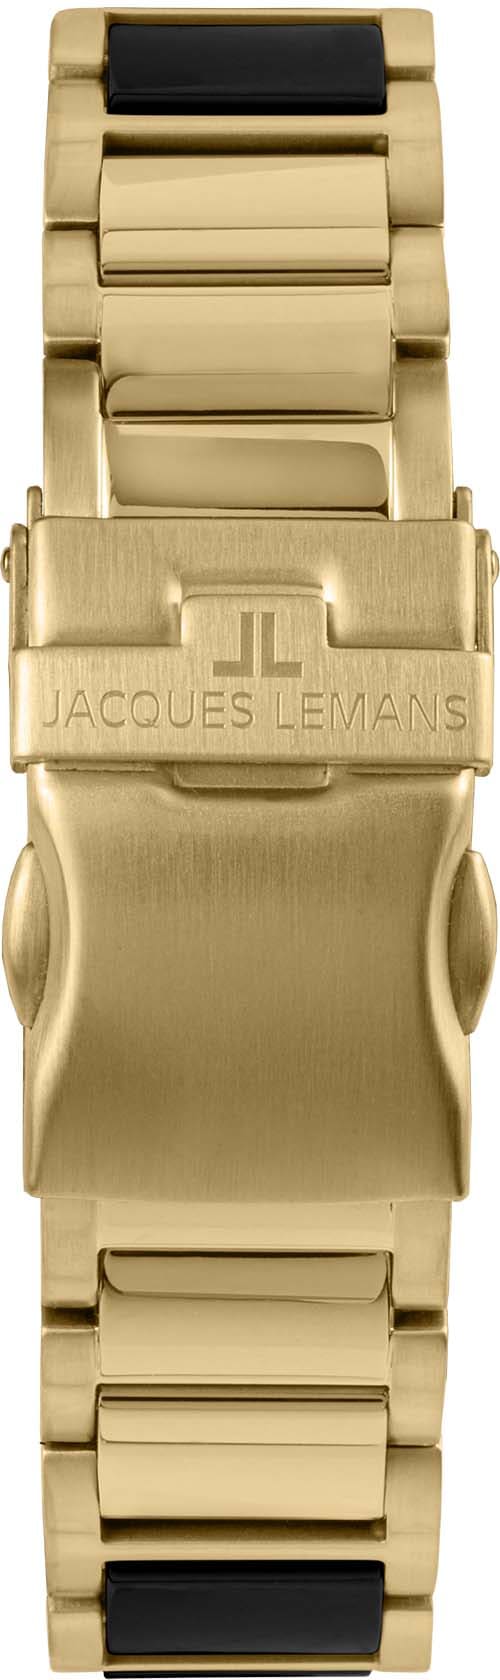 Jacques Lemans Keramikuhr »Liverpool 42-10G«